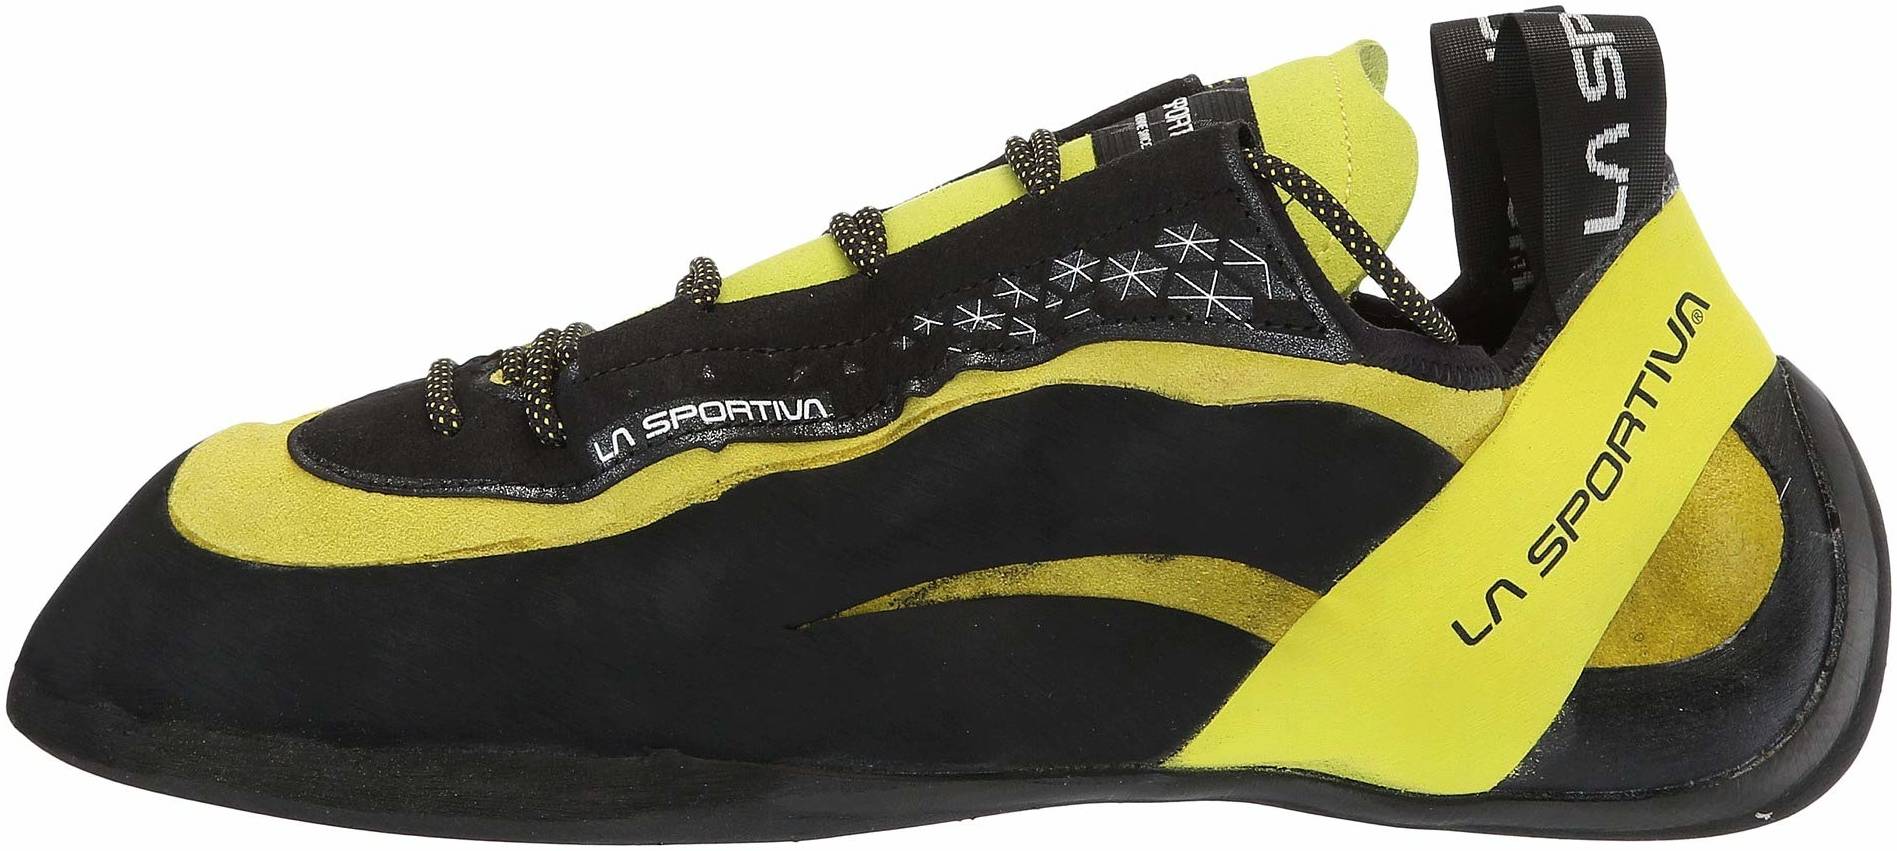 sportiva climbing shoe